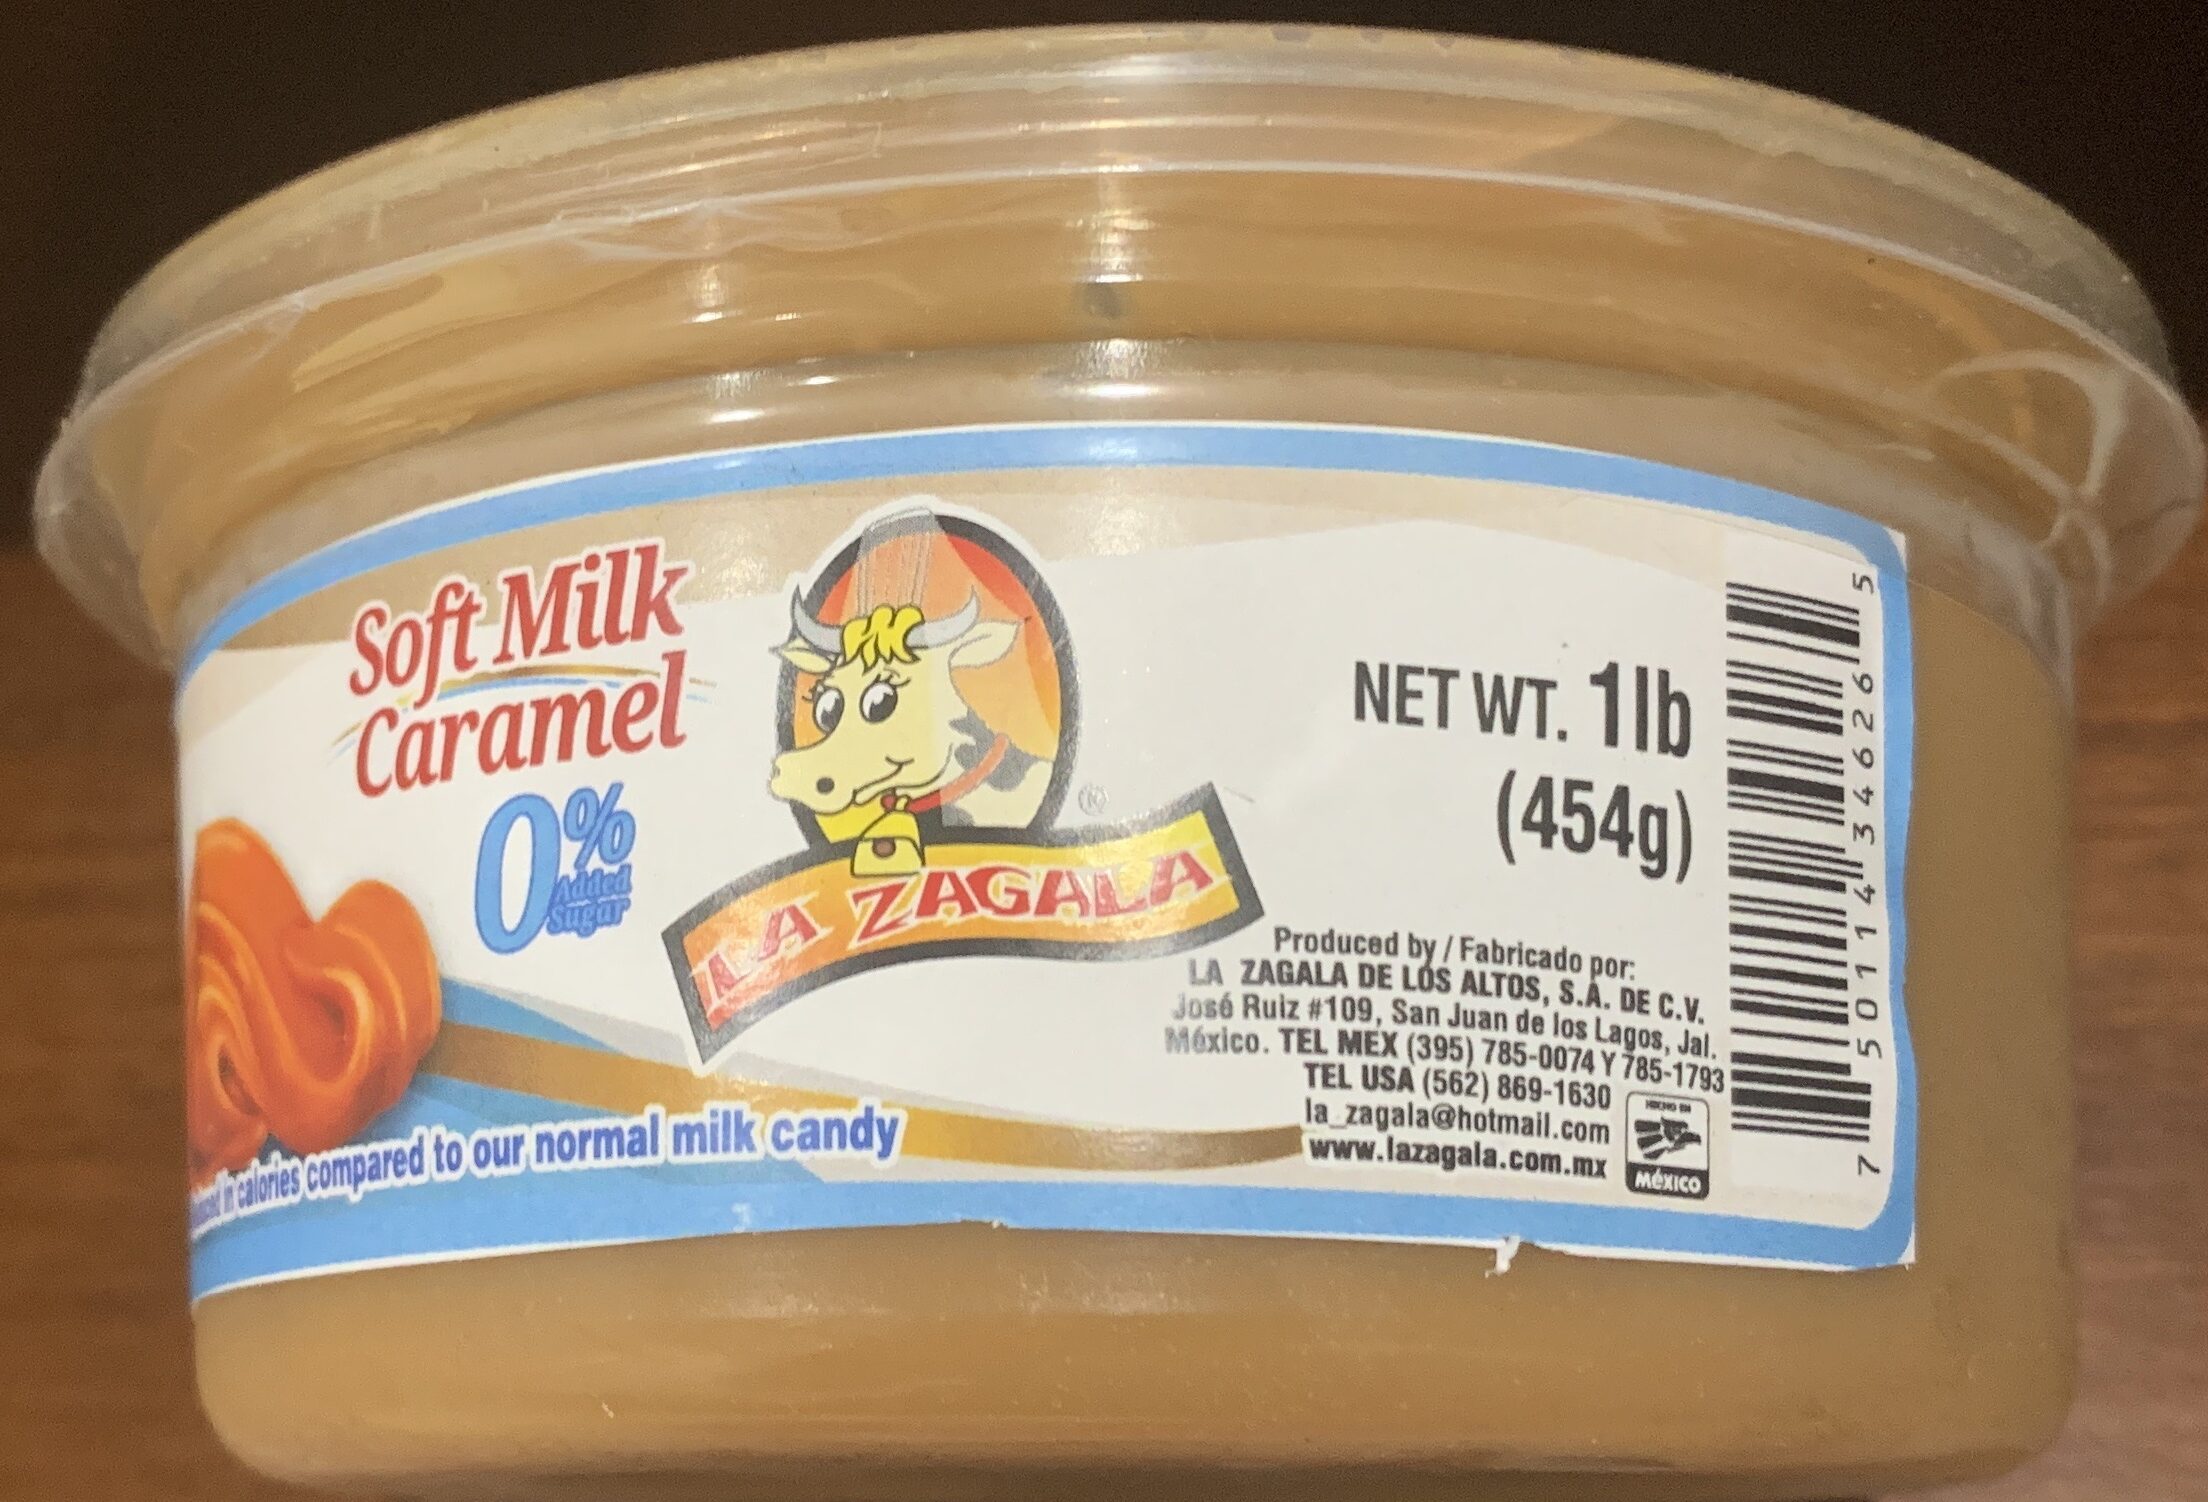 Soft Milk Caramel 0% added sugars - Product - es